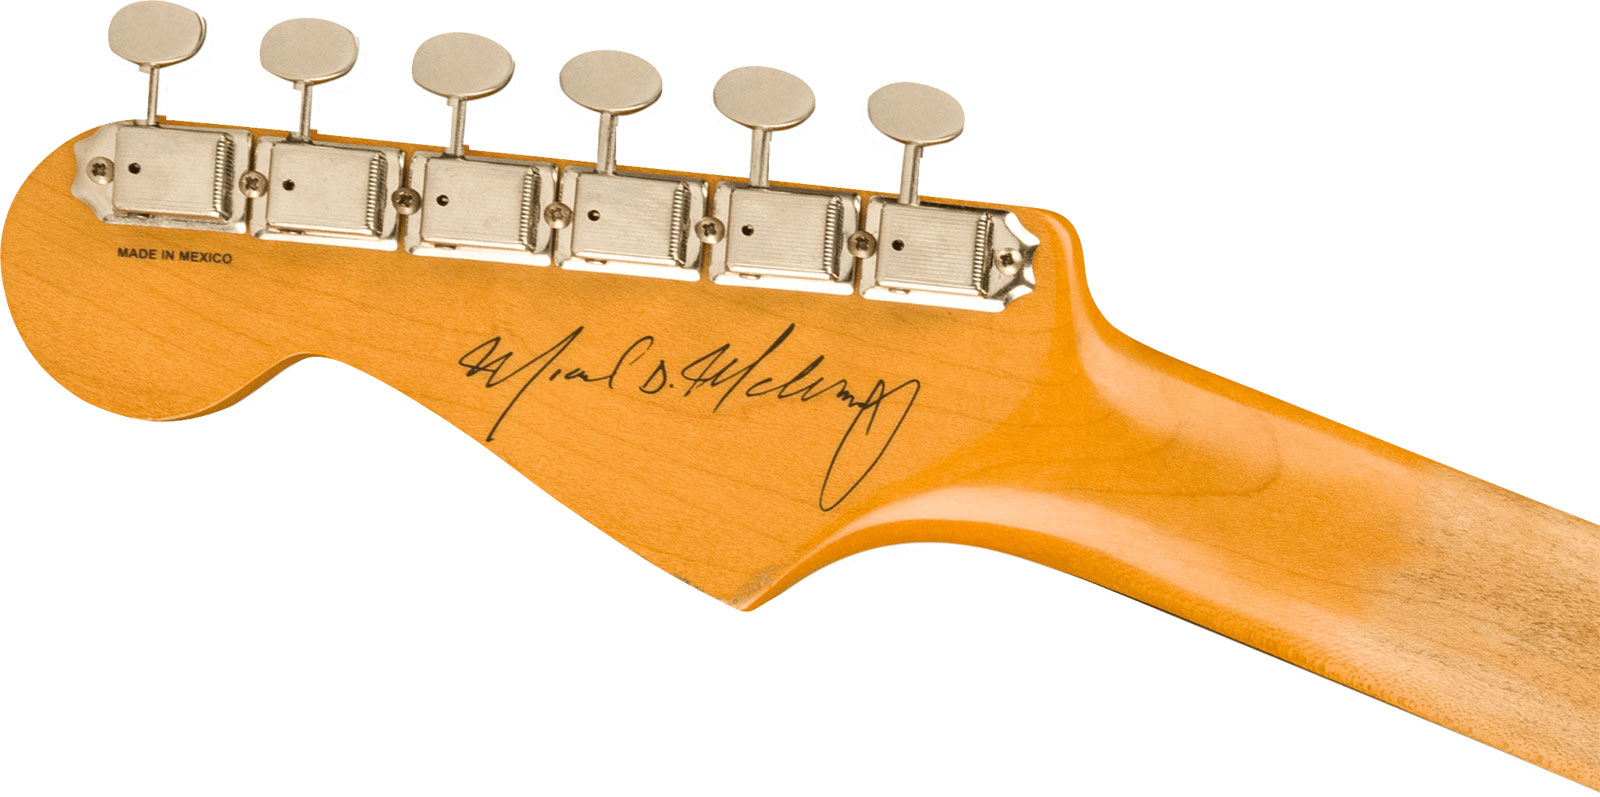 Fender Mike Mccready Strat Mex Signature 3s Trem Rw - Road Worn 3-color Sunburst - Kenmerkende elektrische gitaar - Variation 3